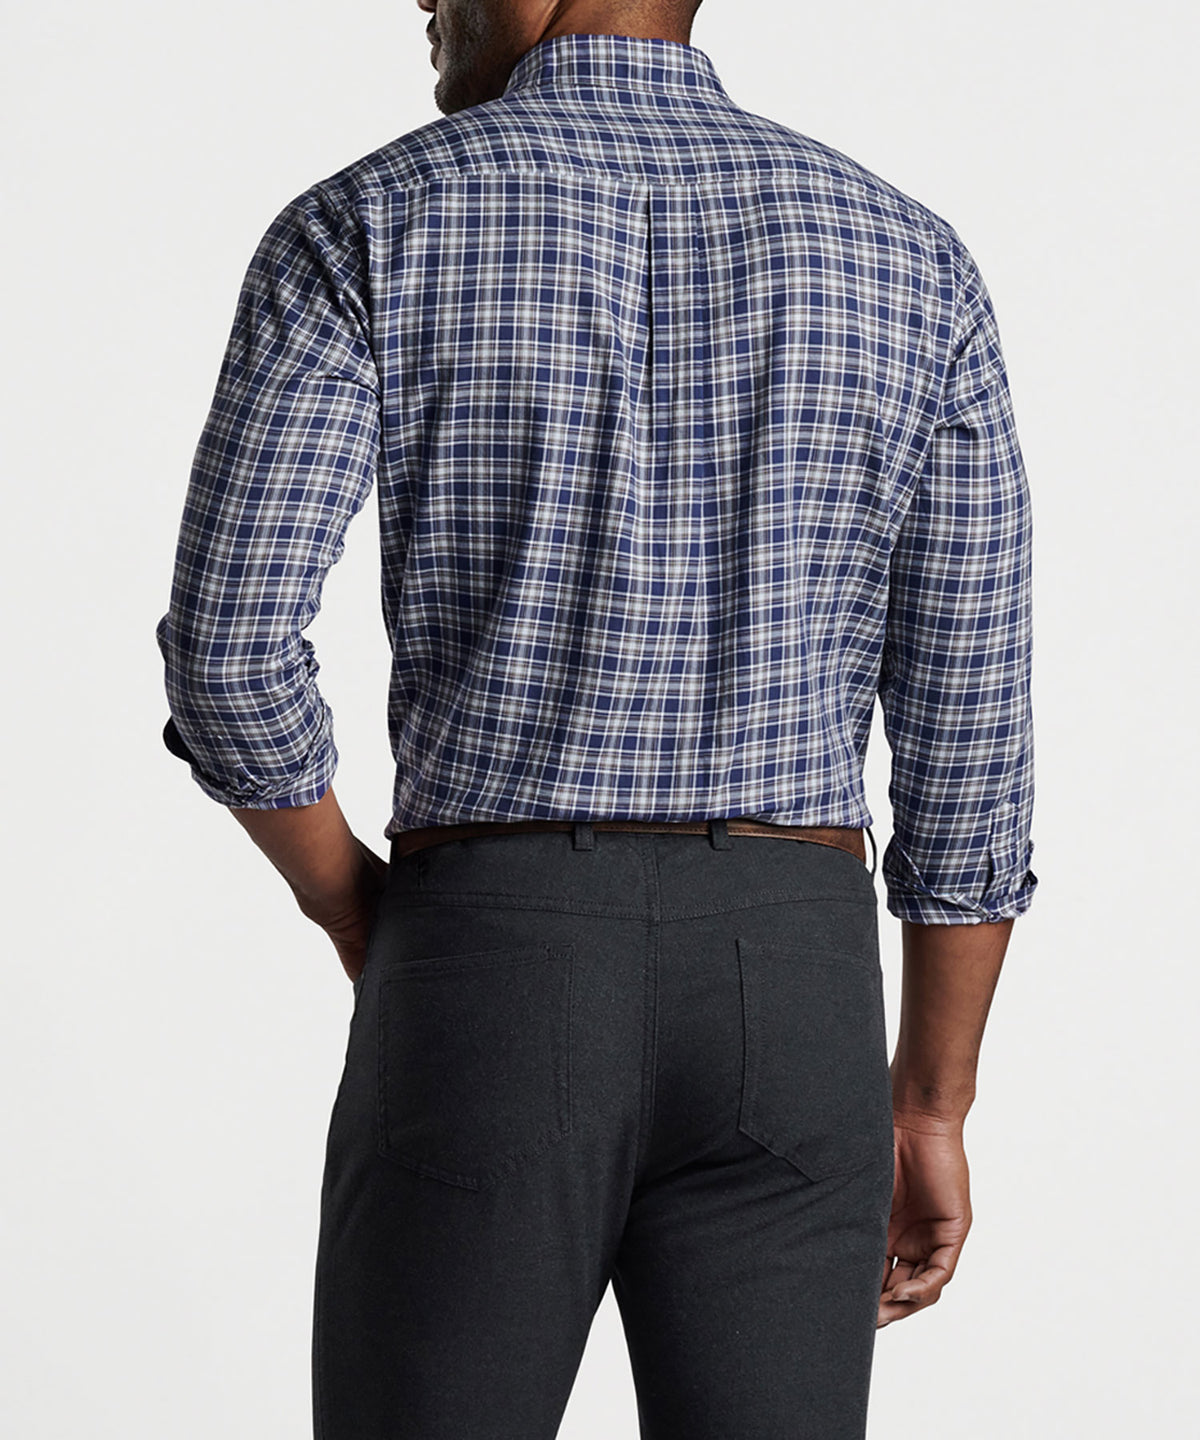 Peter Millar Long Sleeve Haight Sport Shirt, Big & Tall